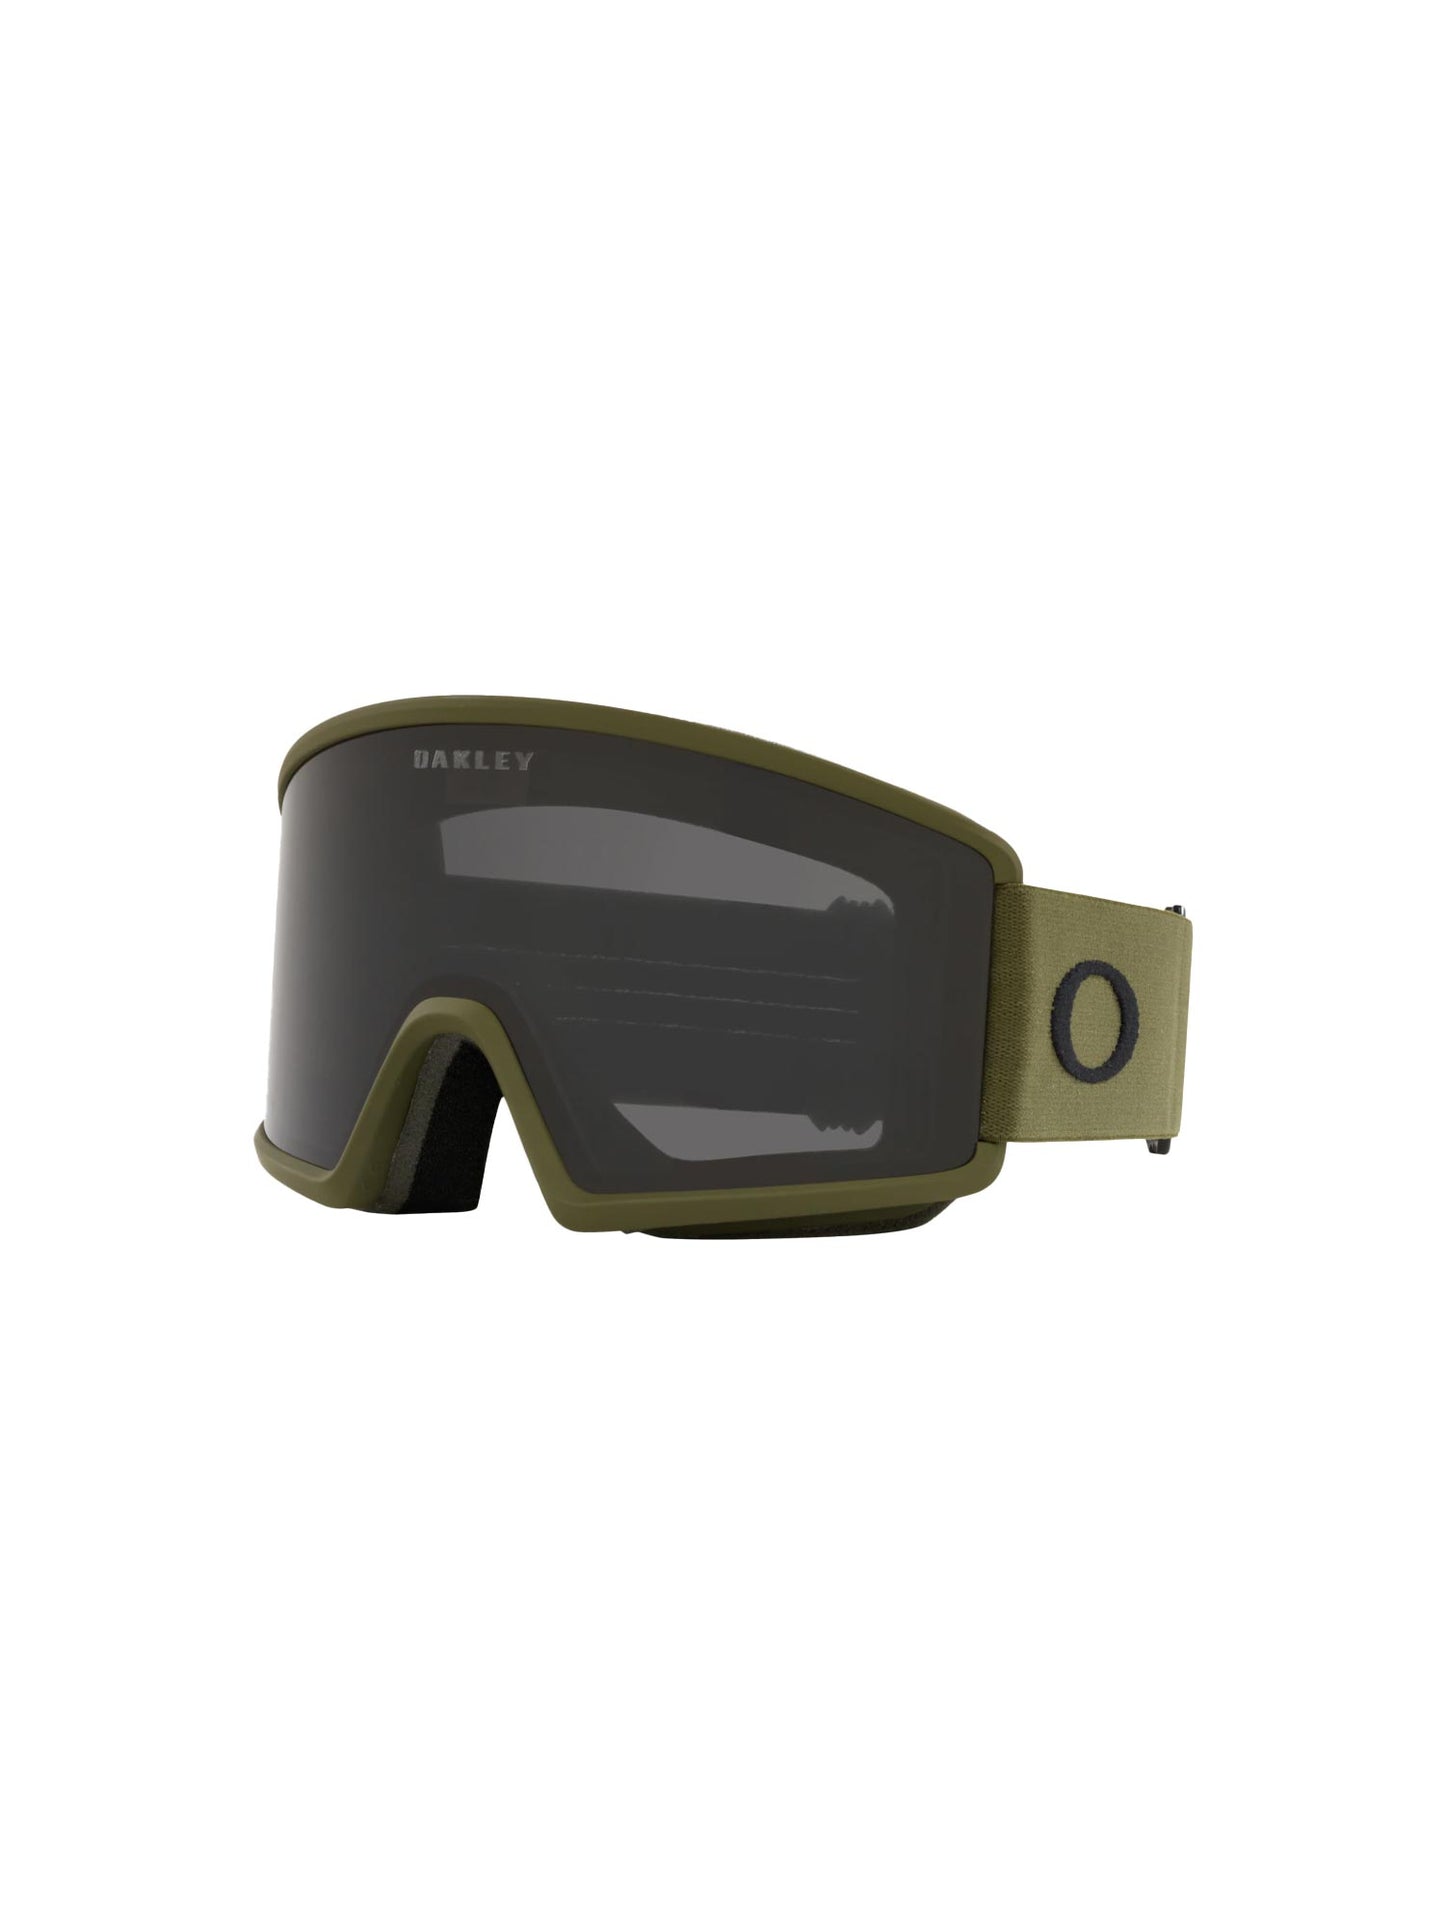 Oakley Target Line ski googles, green strap and black lens